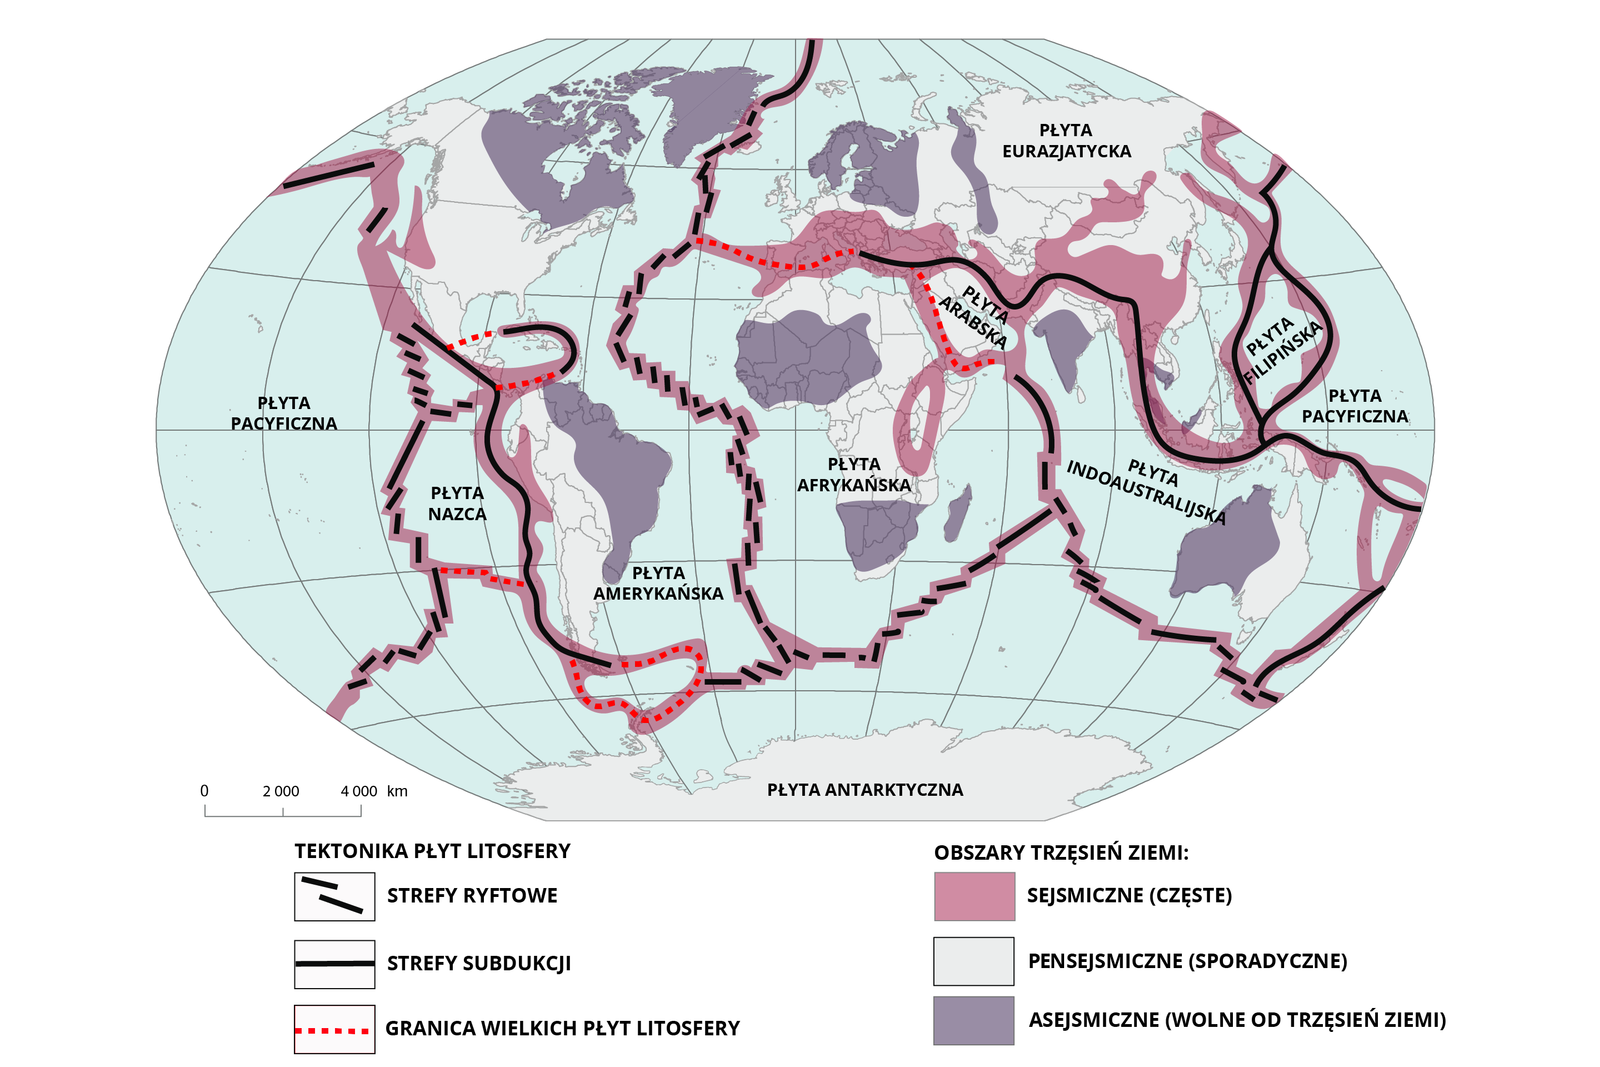 Na mapie świata zaznaczono rozmieszczenie obszarów sejsmicznych na granicach płyt litosfery. Na mapie zaznaczono granice płyt litosfery. Płyta pacyficzna, graniczy z płytą  Nazca, która powierzchnią obejmuje południowo-wschodnią część Pacyfiku. Następnie jest płyta amerykańska granicząca z płytą afrykańską. Ta na północnym wschodzie graniczy z płytą arabską. Europę i Azję obejmuje płyta euroazjatycka. W rejonie Filipin jest płyta filipińska. Płyta obejmująca między innymi Indie i Australię to płyta indoaustralijska. Na południu leży płyta antarktyczna. Na mapie zaznaczono strefy subdukcji: wschodnie wybrzeża Oceanu Spokojnego - wybrzeża Ameryki Południowej i Środkowej, Rów Atakamski - zachodni Ocean Spokojny, u wybrzeży Azji: Filipiny, Wyspy Riukiu, Wyspy Japońskie, Wyspy Kurylskie, Aleuty. Strefy ryftowe: zachodnia i północna granica płyty Nazca, strefa przechodzi na granicę płyty pacyficznej, zachodnia granica płyty eurazjatyckiej i afrykańskiej oraz południowa granica płyty afrykańskiej, zachodnia i południowa granica płyty indoaustralijskiej. Na mapie wyróżniono dwie główne strefy sejsmiczne Ziemi: okołopacyficzną, która obejmuje pacyficzne wybrzeża obu Ameryk, archipelag Aleutów i Wysp Kurylskich, Japonię, Tajwan, Filipiny, Mariany, Nową Gwineę, archipelag Nowych Hebrydów, wyspy Fidżi, Samoa, Tonga, Kermadec i Nową Zelandię. Jest to pas utworzony głównie przez strefy subdukcji pod rowami oceanicznymi. Drugą strefą jest strefa alpejsko-himalajska, która ciągnie się od Wysp Azorskich poprzez Alpy, Półwysep Apeniński, Bałkany, Anatolię, Wyżynę Irańską, góry Hindukuszu, Himalaje i Tybet po Wyspy Sundajskie. Jest to pas utworzony głównie przez strefy subdukcji pod młodymi górami. Strefami sejsmicznymi są także grzbiety śródoceaniczne i ryfty kontynentalne (takie, jak Wielkie Rowy Afrykańskie czy ryft Bajkału). Obszary nieaktywne sejsmicznie to między innymi Grenlandia, północno-wschodnia część Ameryki Północnej (Kanady), wschodnia cześć Ameryki Południowej, zachodnia i południowa część Afryki, Skandynawia i zachodnia część Rosji, Indie, północno-zachodnie obszary Australii, Antarktyda.     